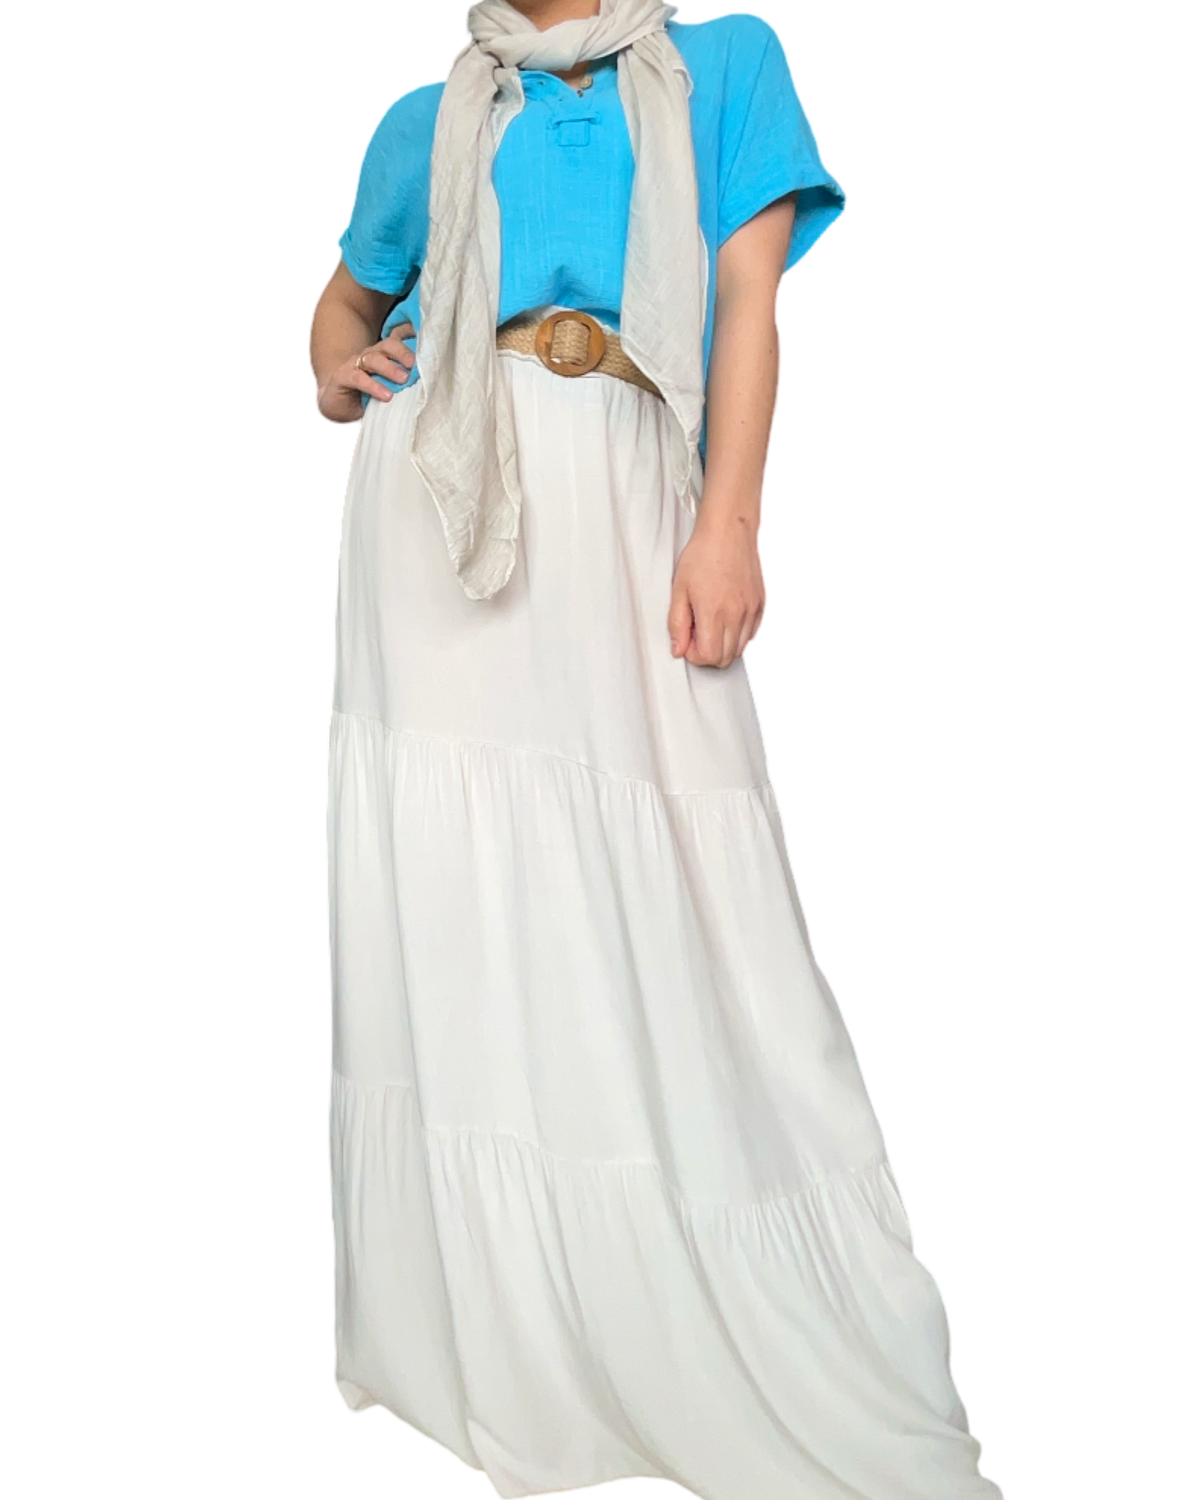 Blouse turquoise unie pour femme avec jupe longue et ceinture en jute.